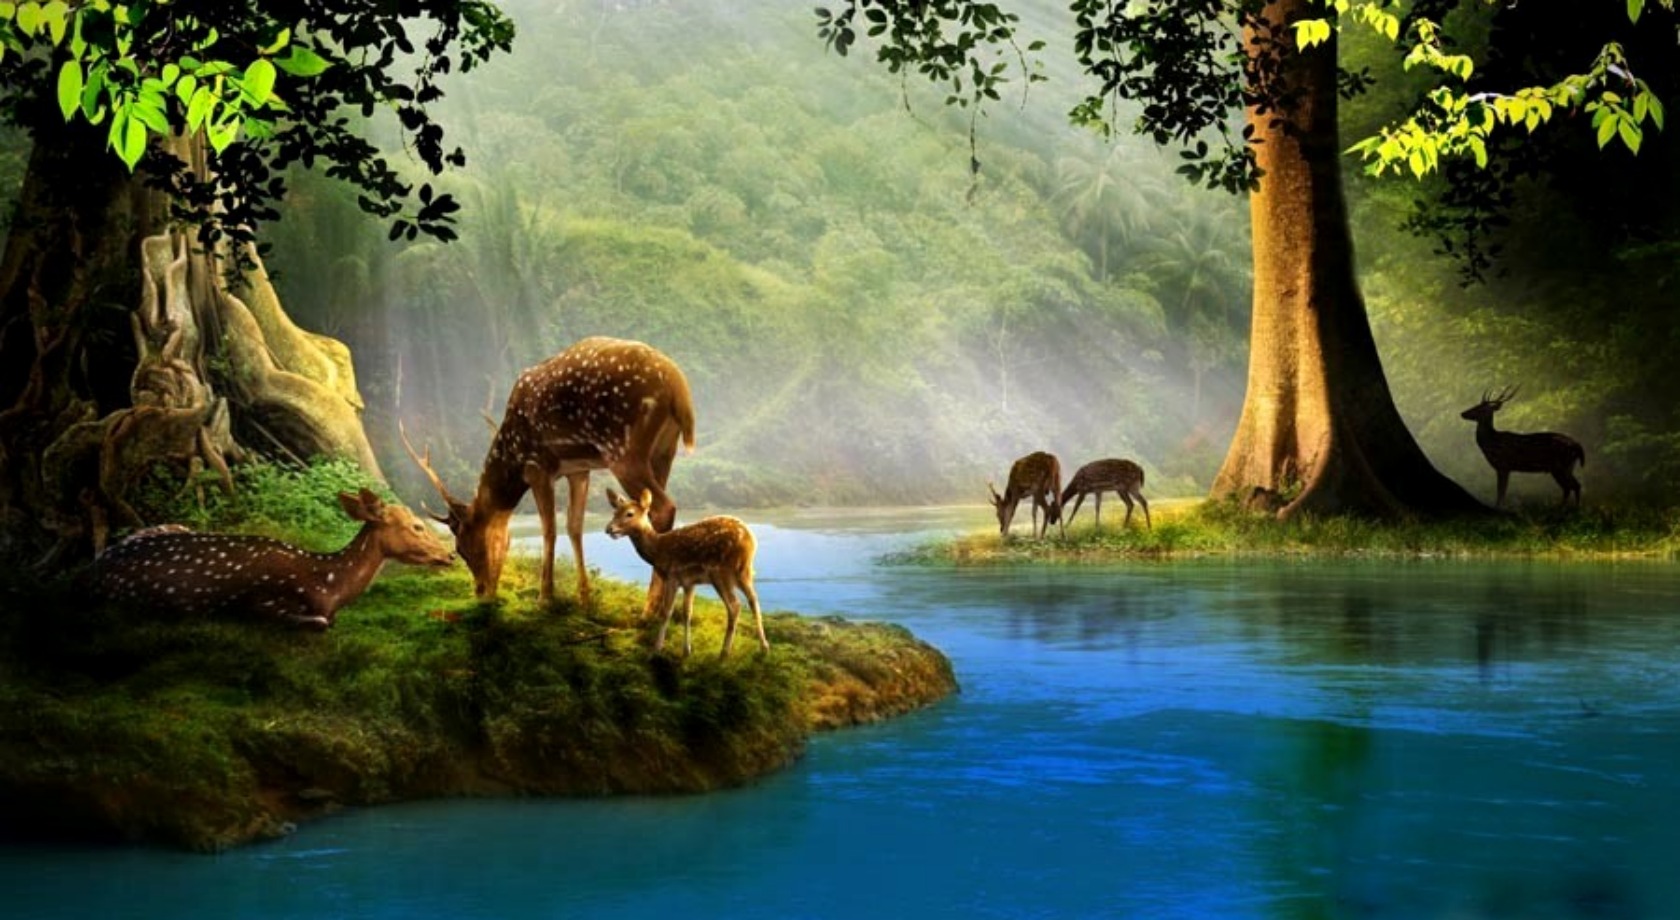 Deer Puter Wallpaper Desktop Background Id